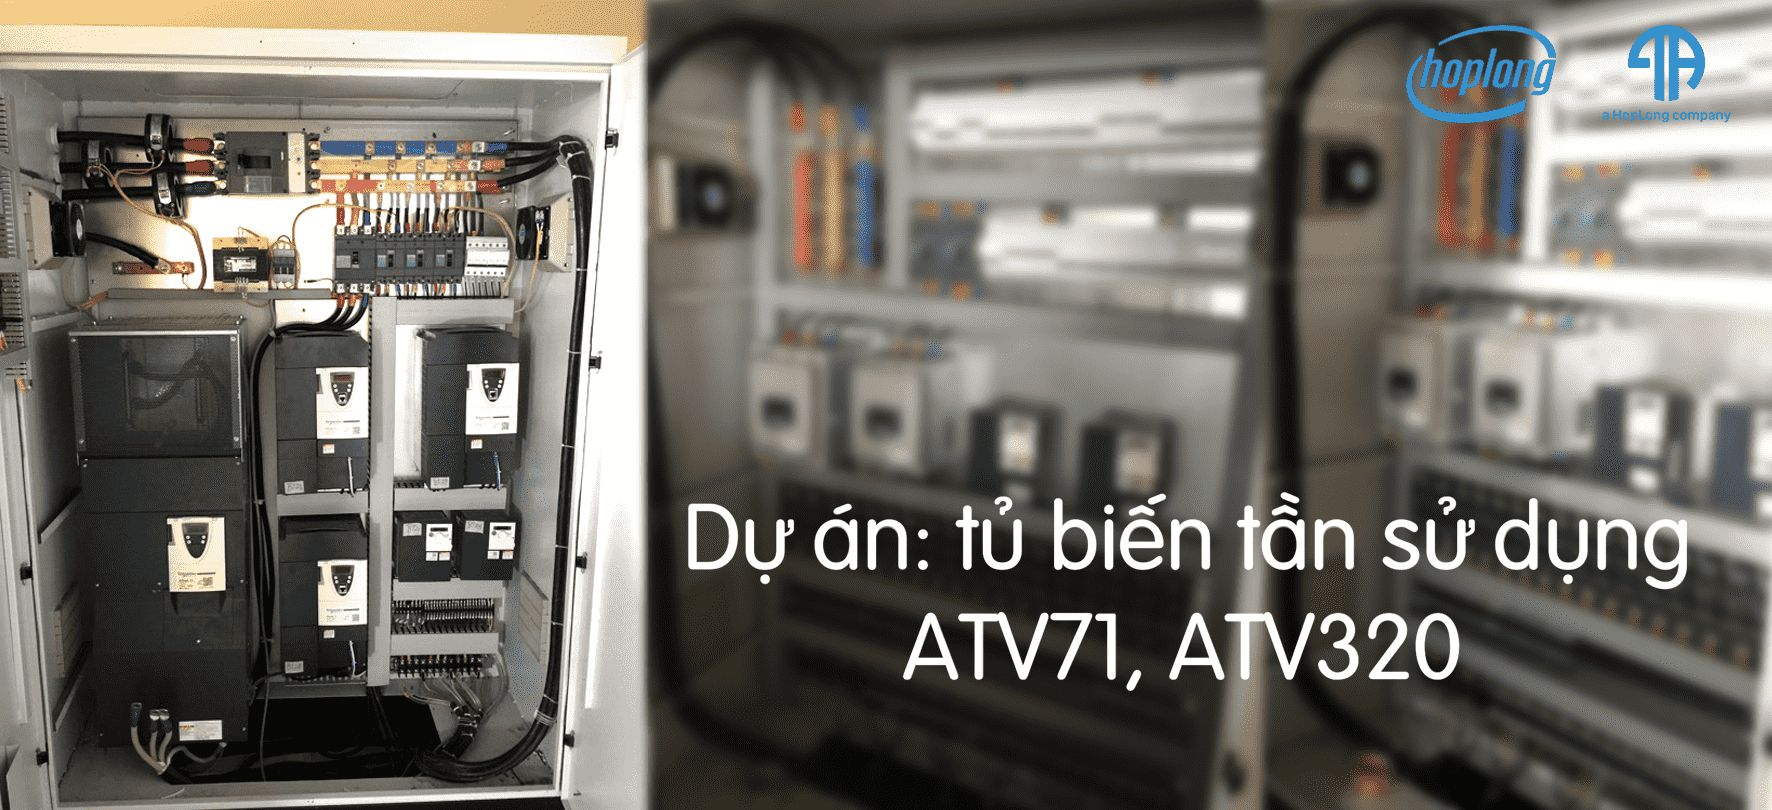 Dự án: Tủ biến tần sử dụng ATV71, ATV320